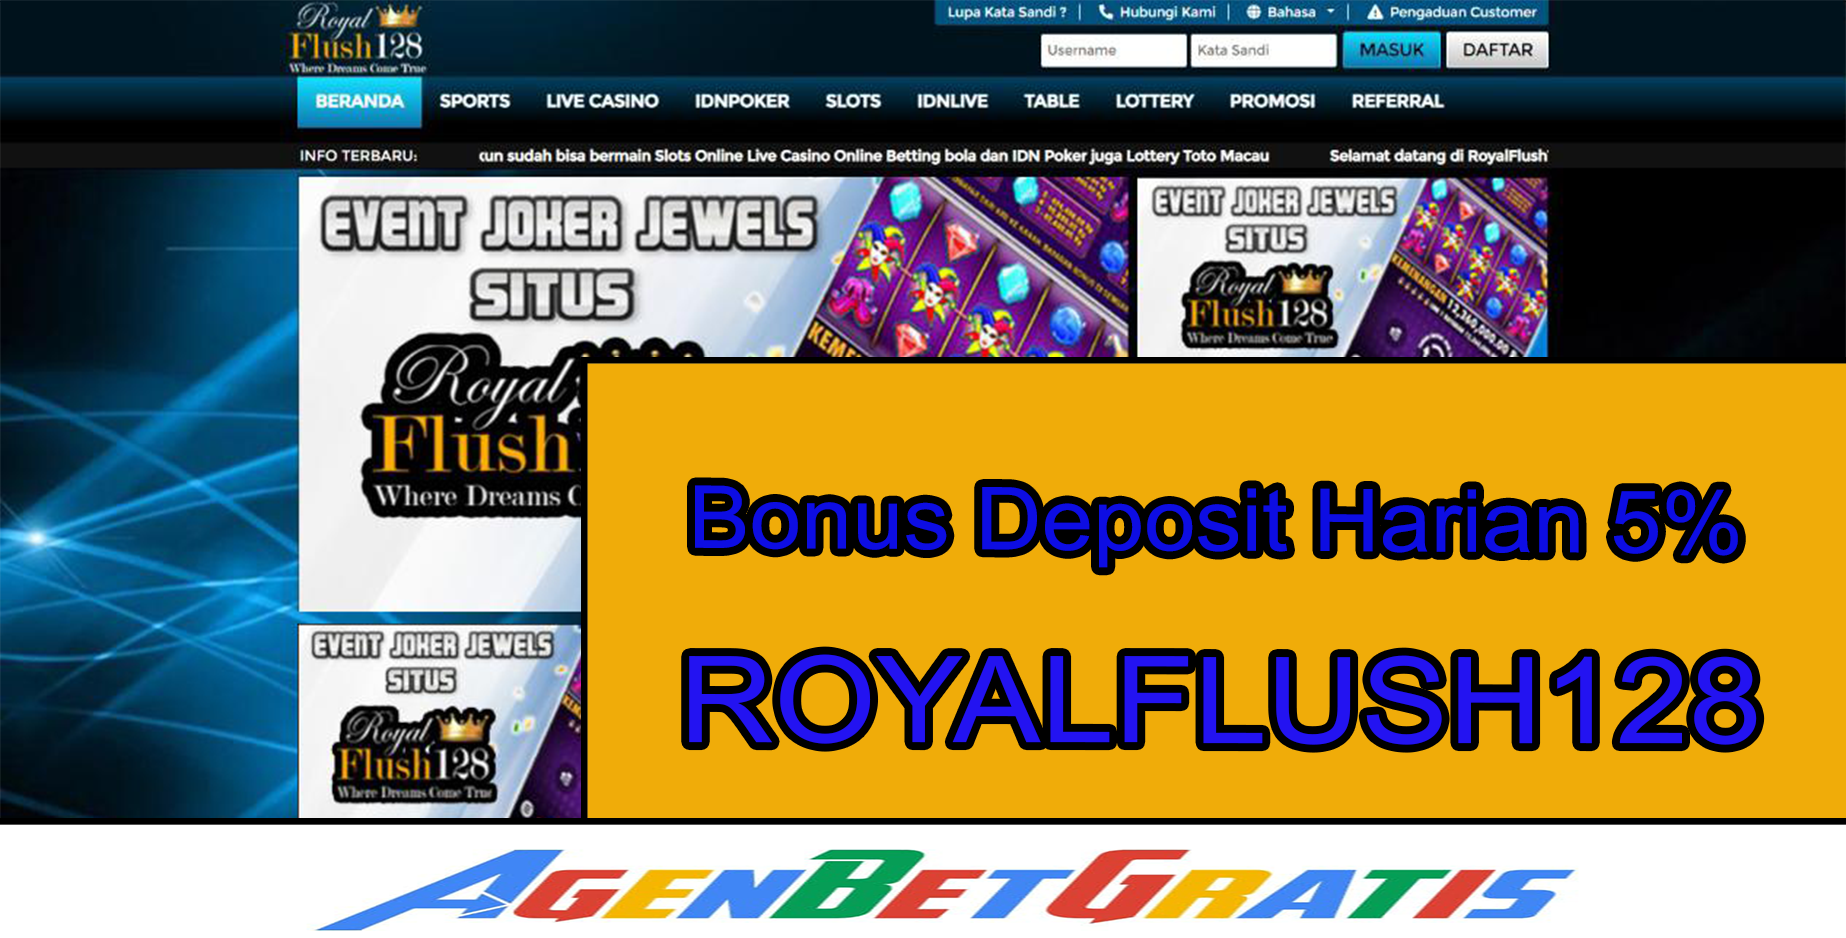 ROYALFLUSH128 - Bonus Deposit Harian 5%